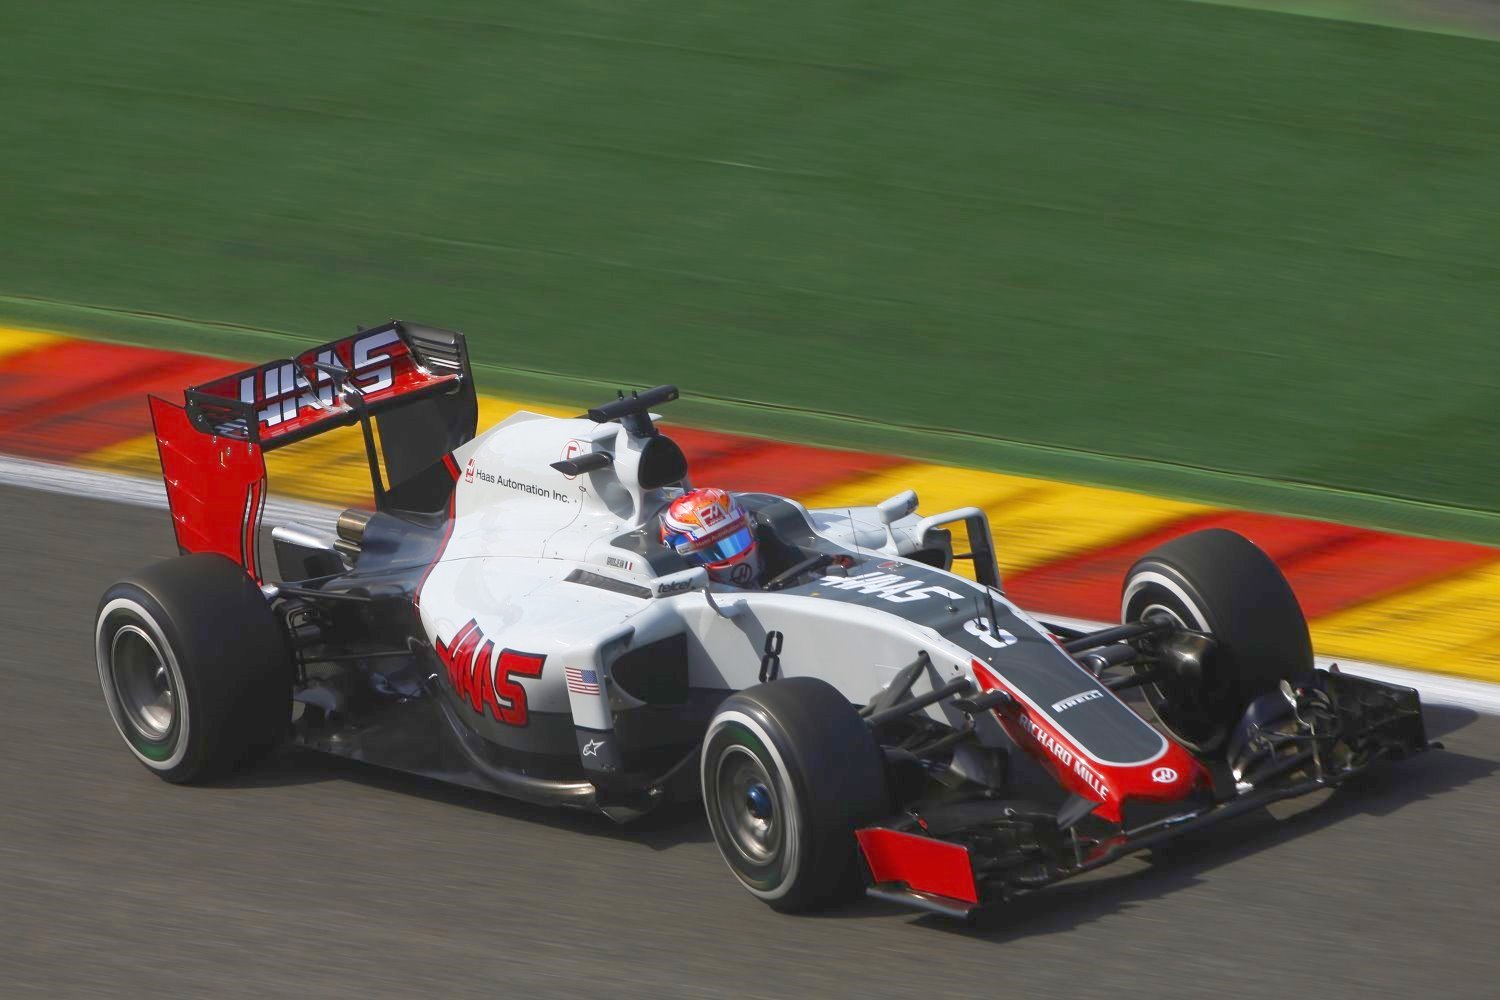 Grosjean in the Haas